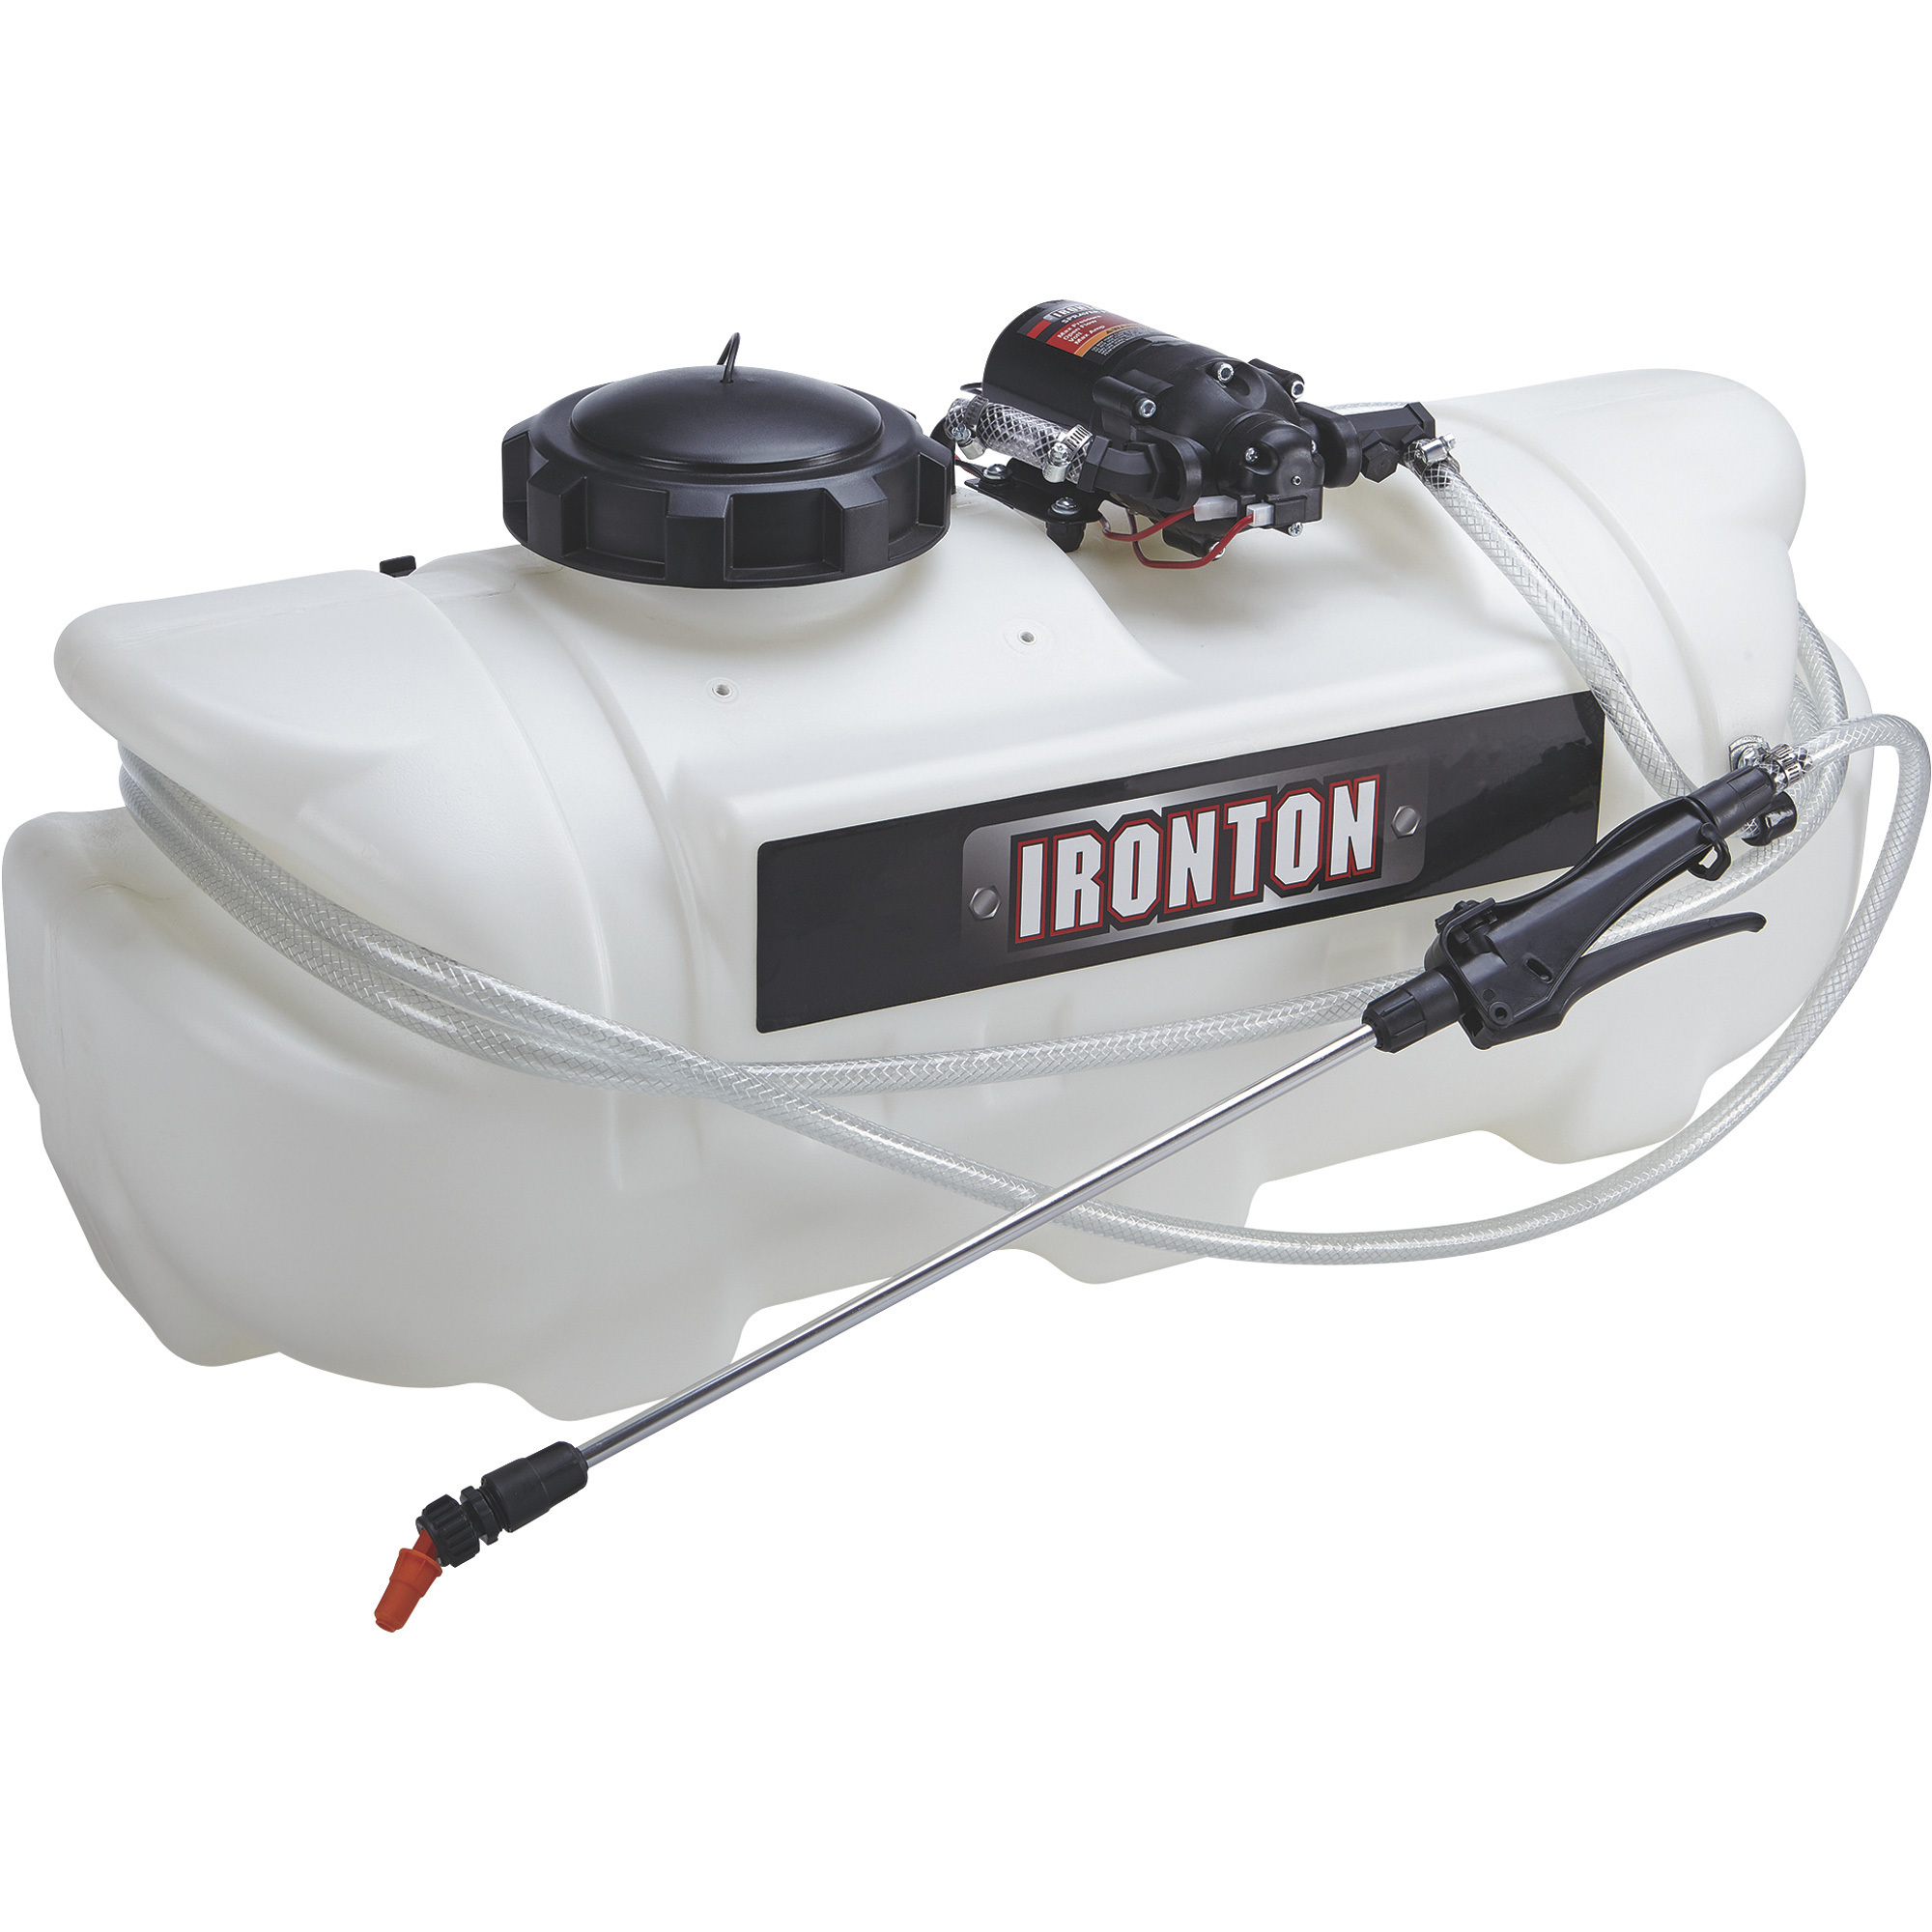 Ironton ATV Spot Sprayer â 16-Gallon Capacity, 2.1 GPM, 12 Volt